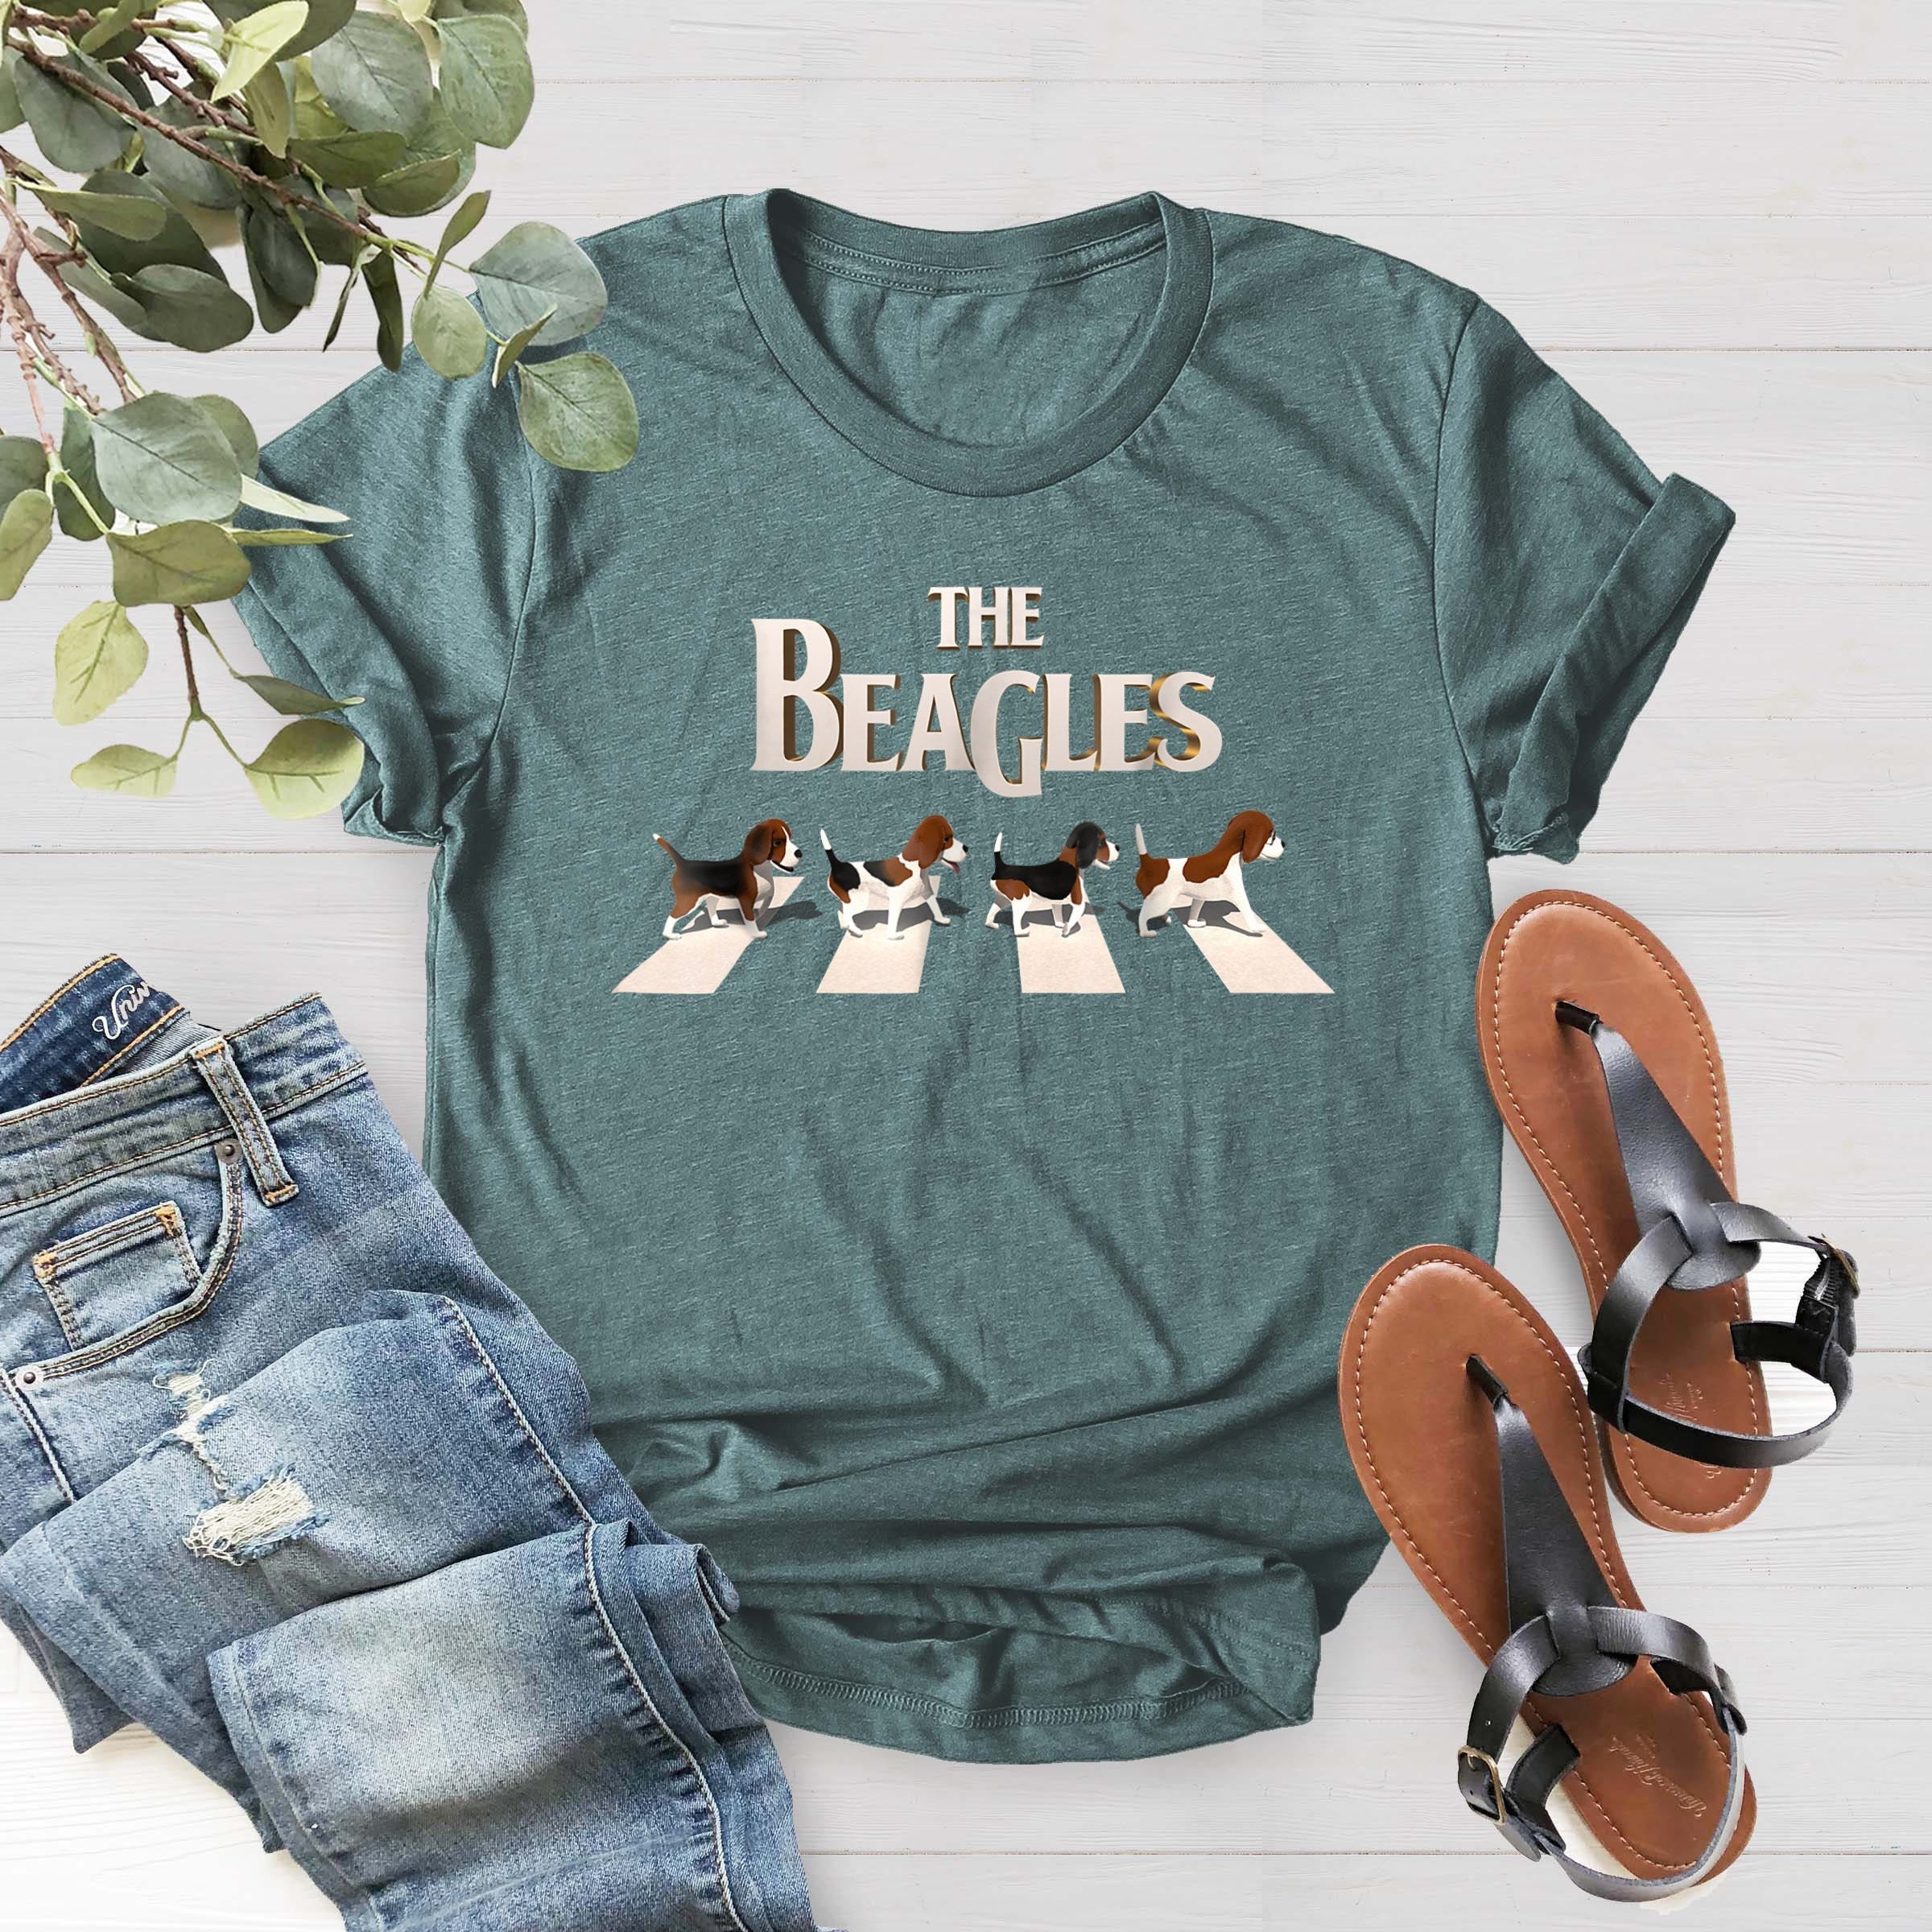 The Beagles Shirt, Gift For Beagle Owner, Beagle Mom Shirt, Dog Lover Shirt, Beagle Lover Shirt, Dog Tee, Dog Mama Shirt, Dog Papa Tee Gift